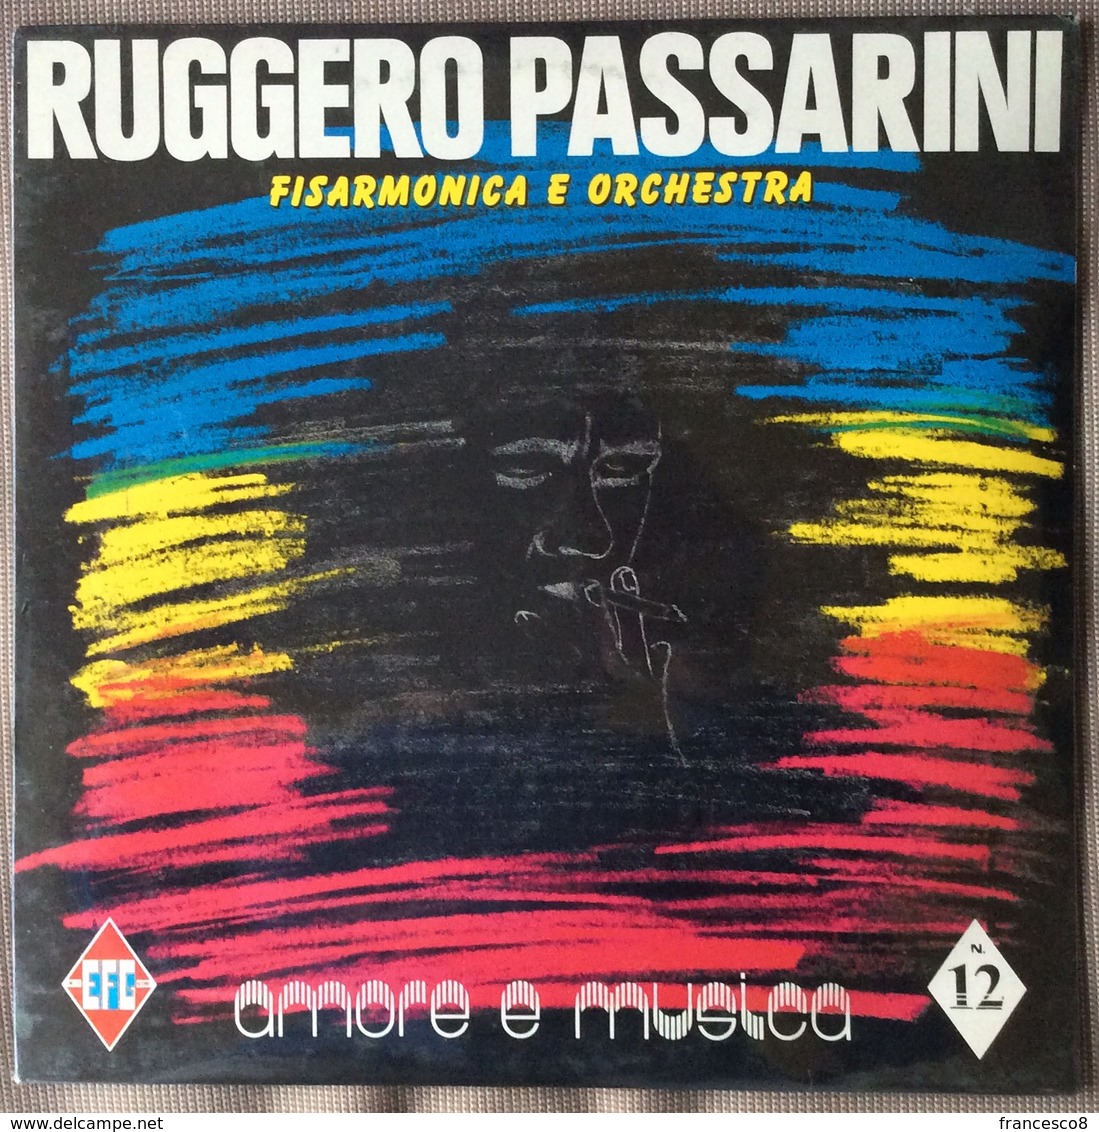 LP 33 - RUGGERO PASSARINI FISARMONICA E ORCHESTRA . AMORE E MUSICA N 12 - Other - Italian Music